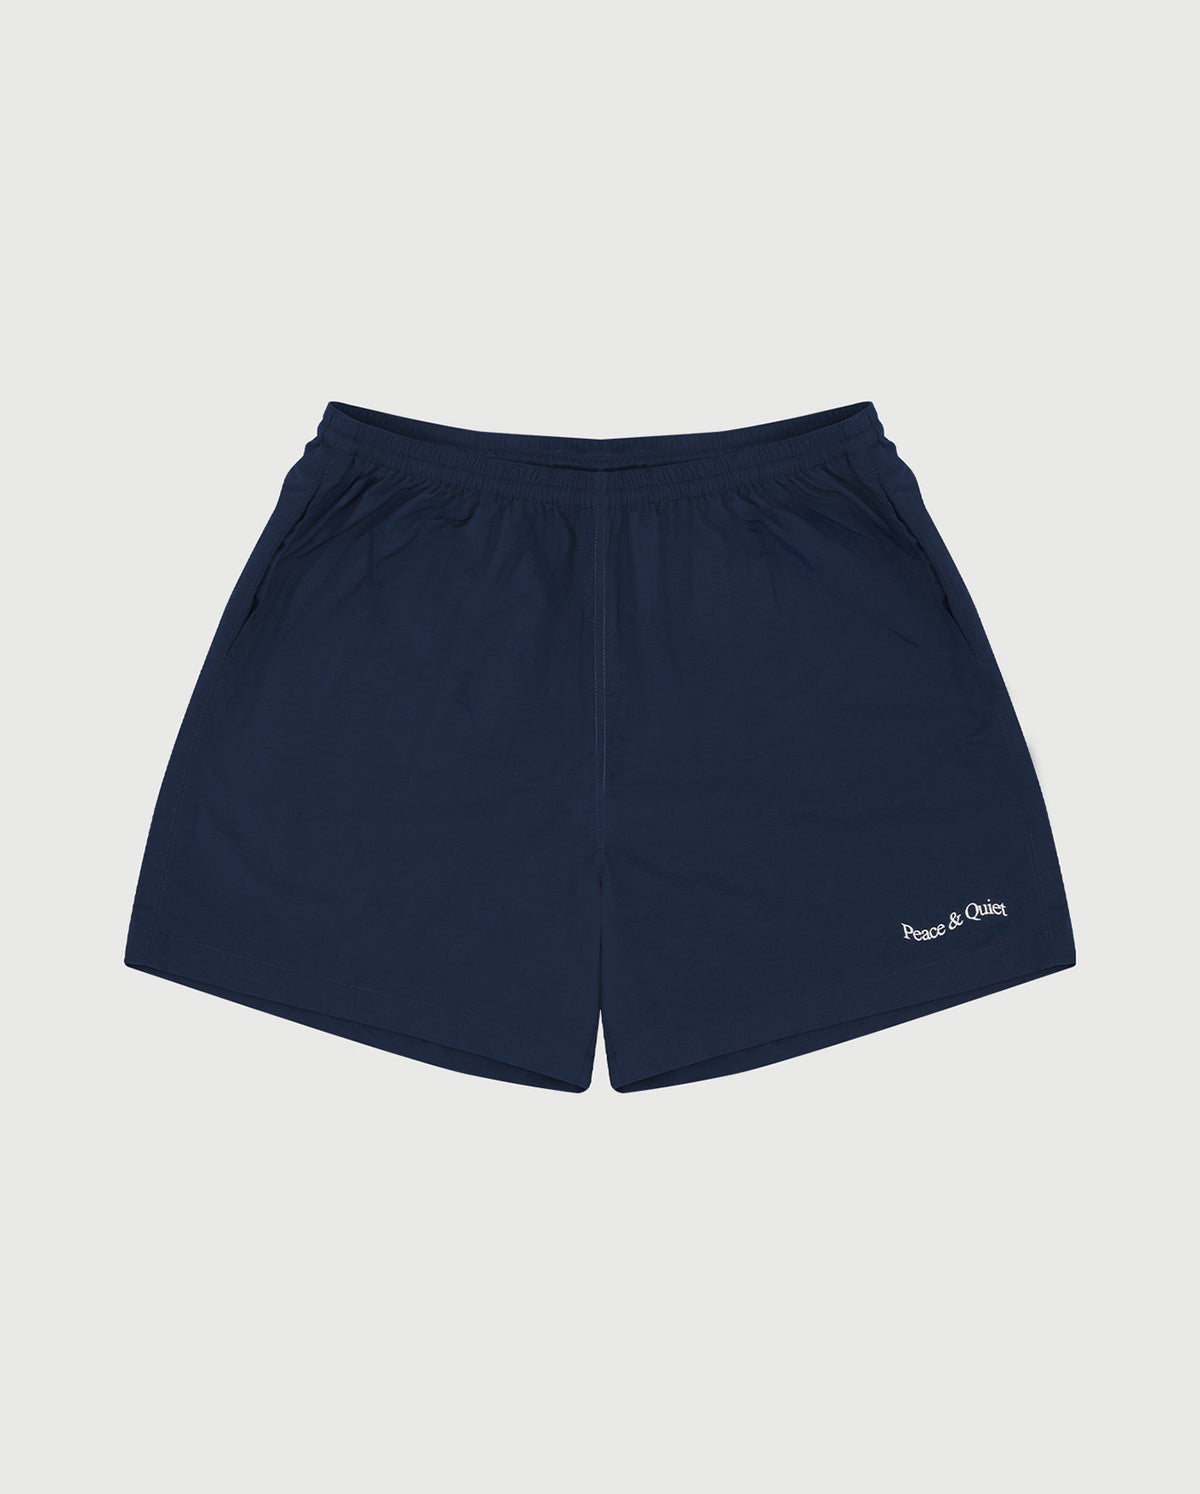 Wordmark Nylon 5' Shorts - Navy